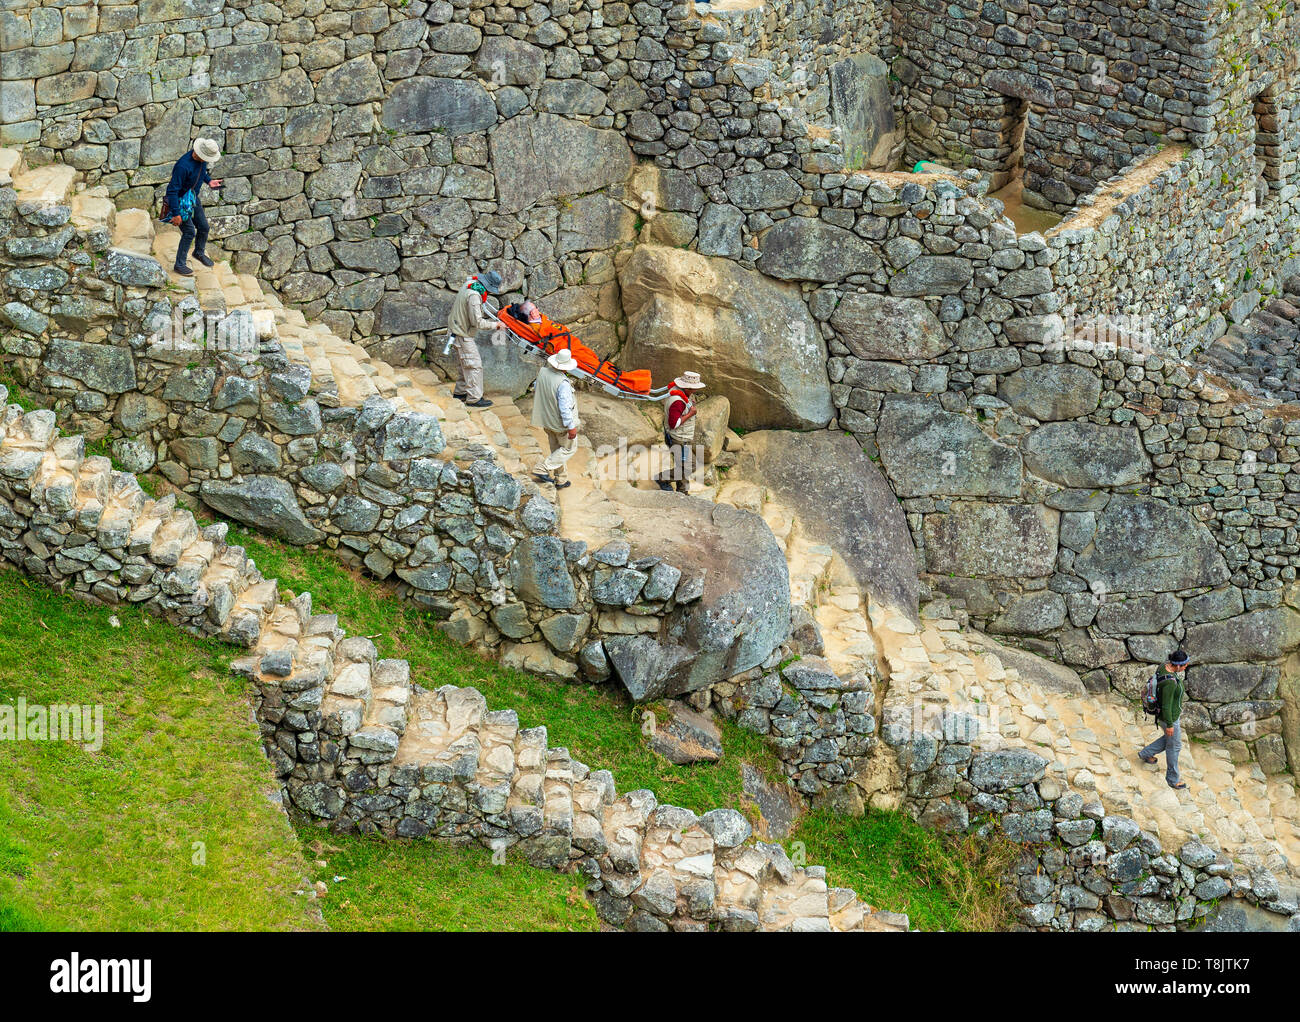 Emerengy nel sito Inca di Machu Picchu come un uomo anziano e turistico è portato via in una barella a causa di malessere da altitudine e disidratazione, Perù. Foto Stock